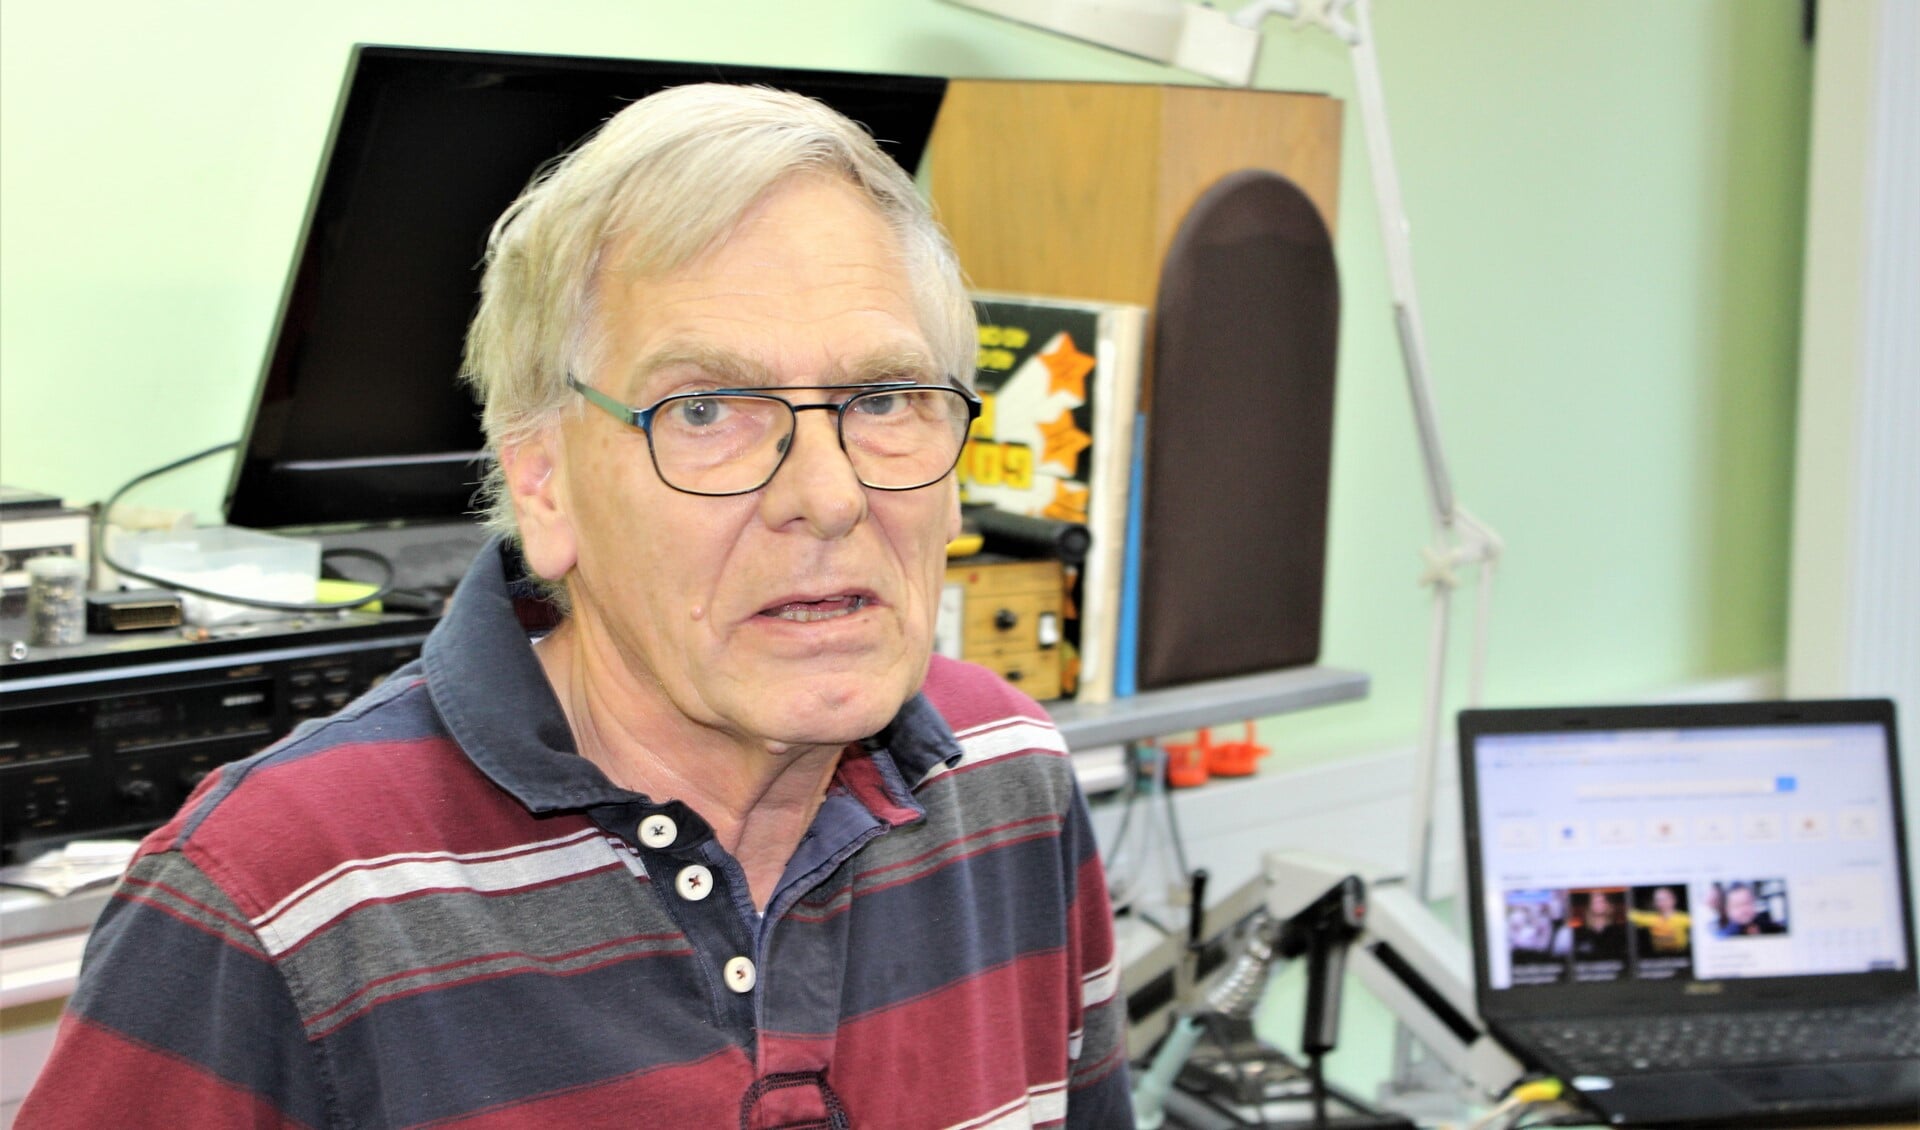 Bram Turion stopt na 48 jaar te hebben gewerkt in de electronica, waarvan 25 jaar in zijn eigen zaak CenTurion Service, en gaat met pensioen (foto: DJ).